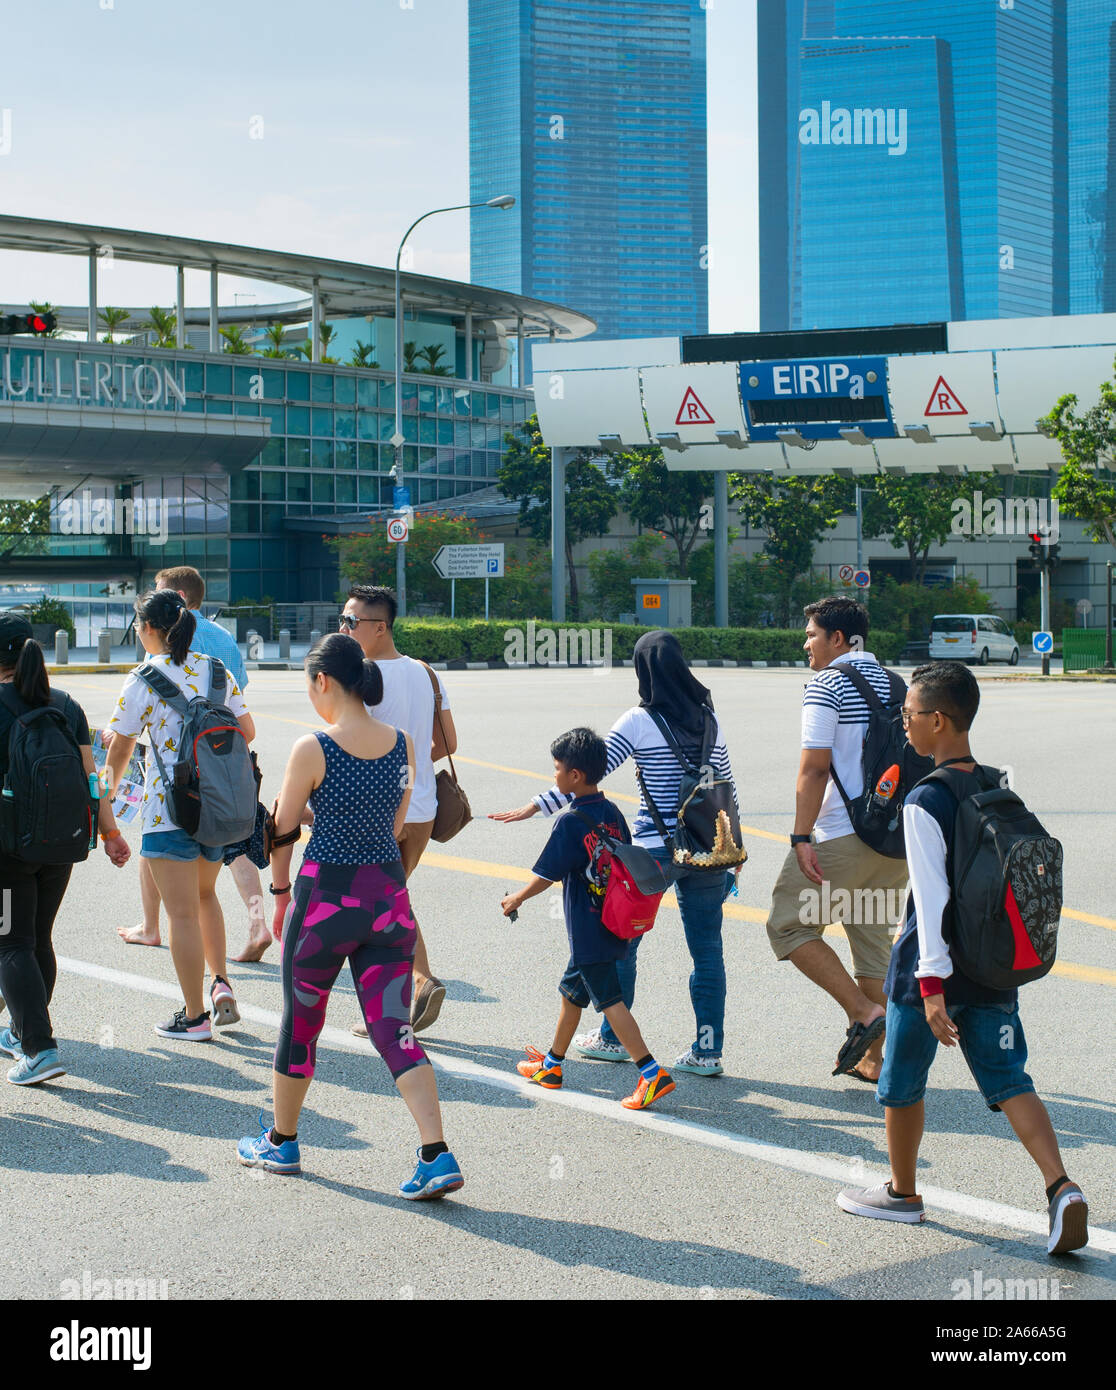 Singapour - 15 janvier 2017 : Les personnes qui traversent la route à Singapour. Singapour est un commerce mondial, la finance et le transport hub Banque D'Images